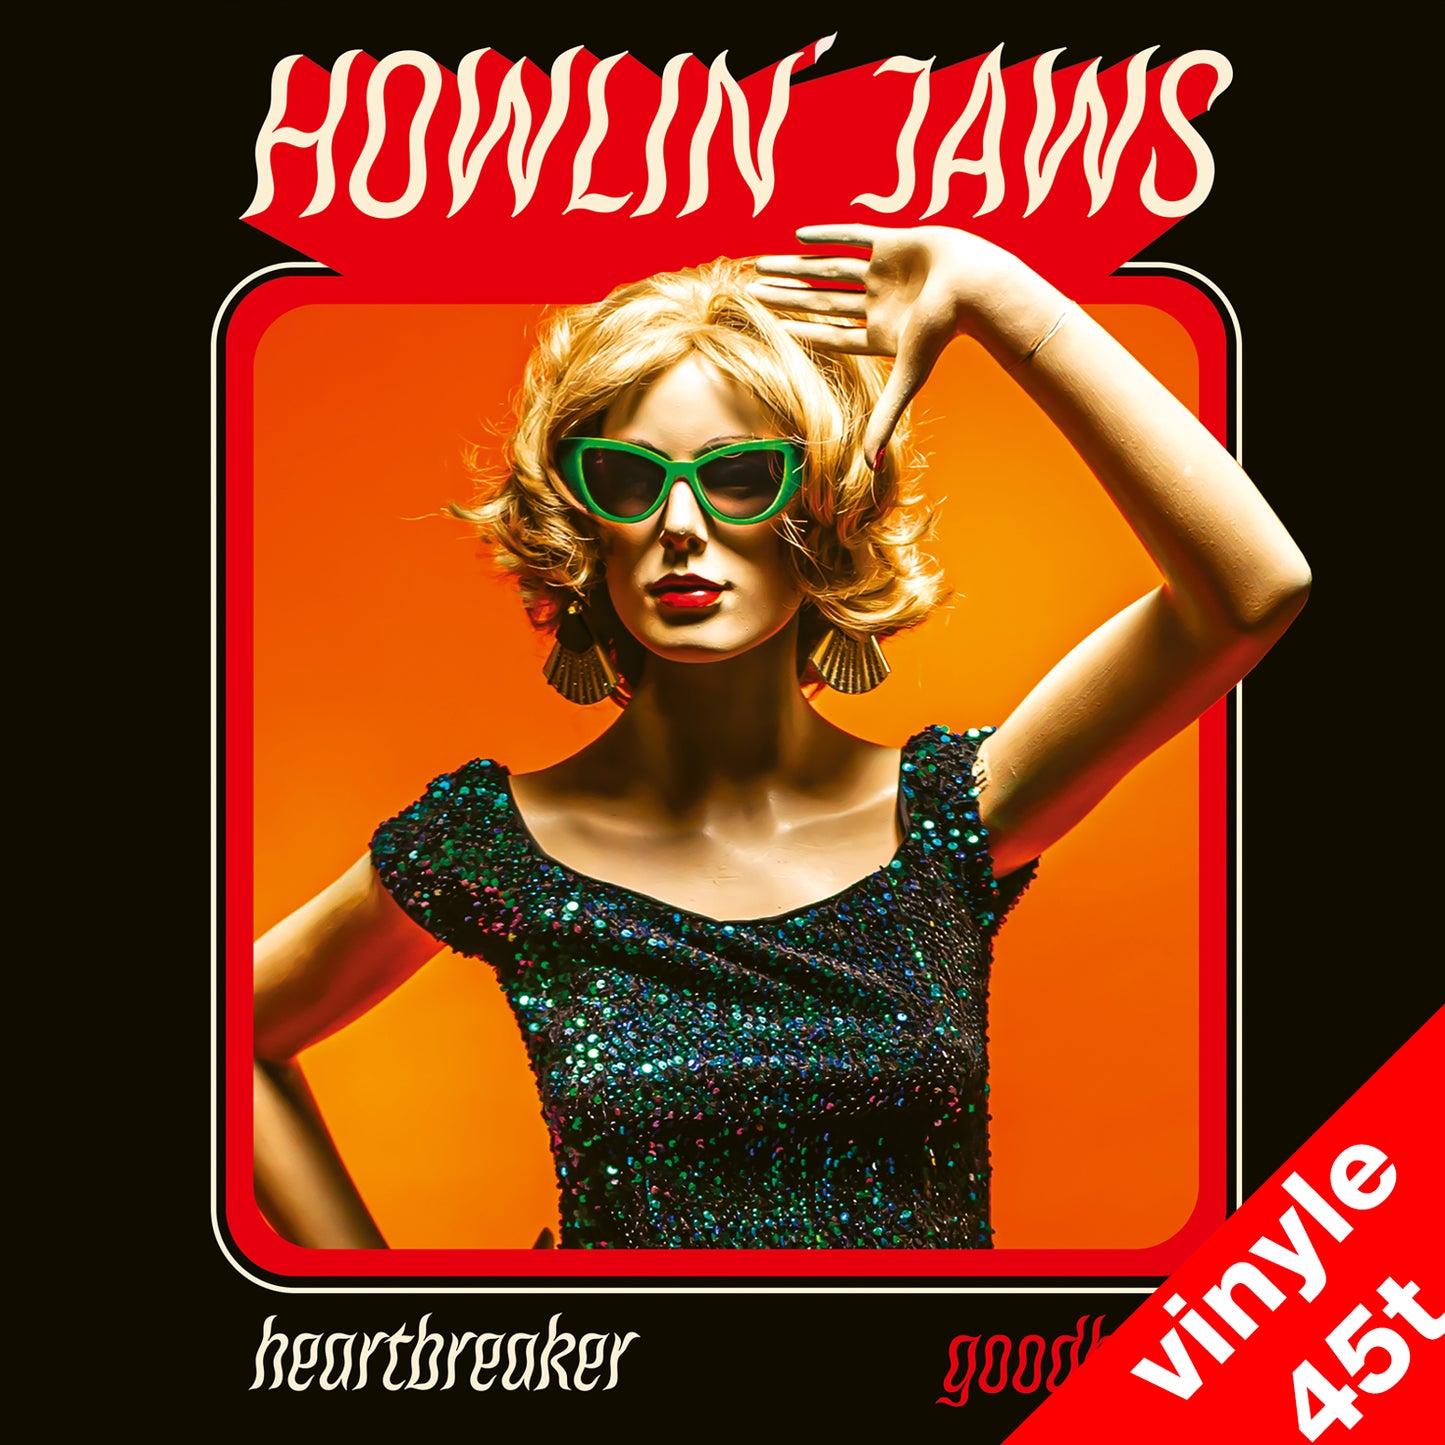 45t vinyle Howlin' Jaws  "Heartbreaker / Goodbye"